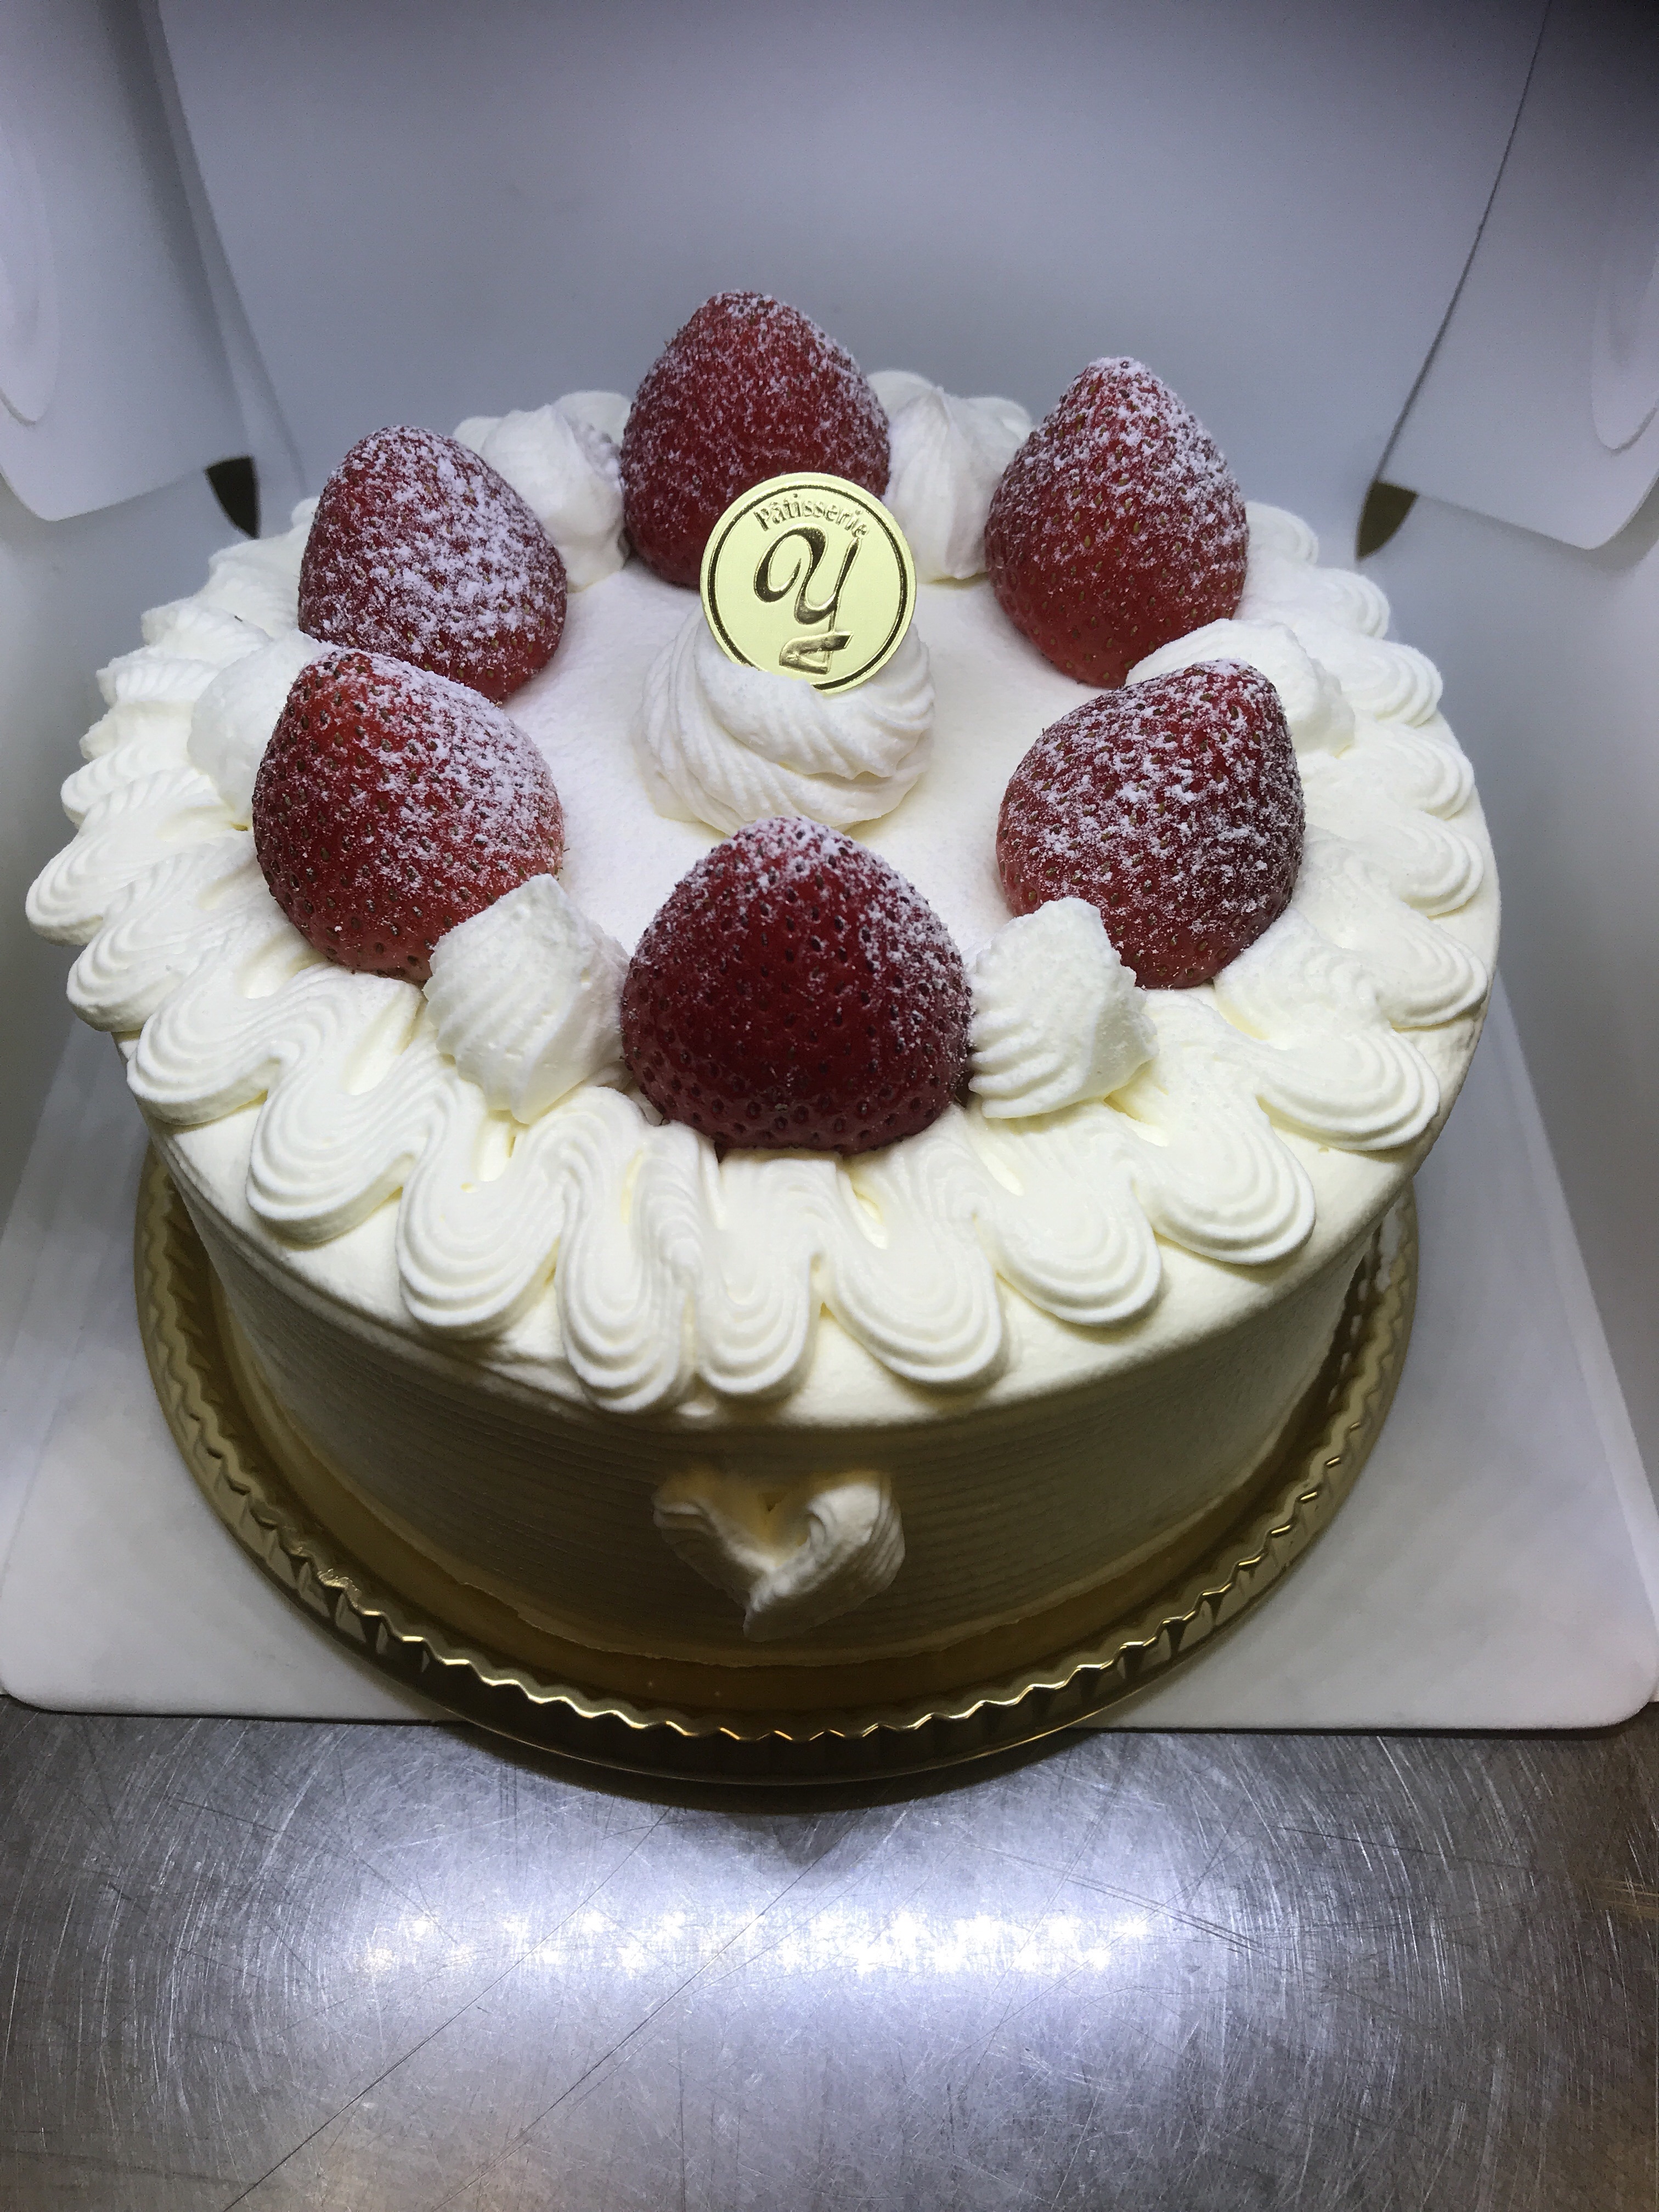 ホールケーキ デコレーションケーキ ケーキと焼き菓子の由香里絵 青梅市 羽村市 瑞穂町